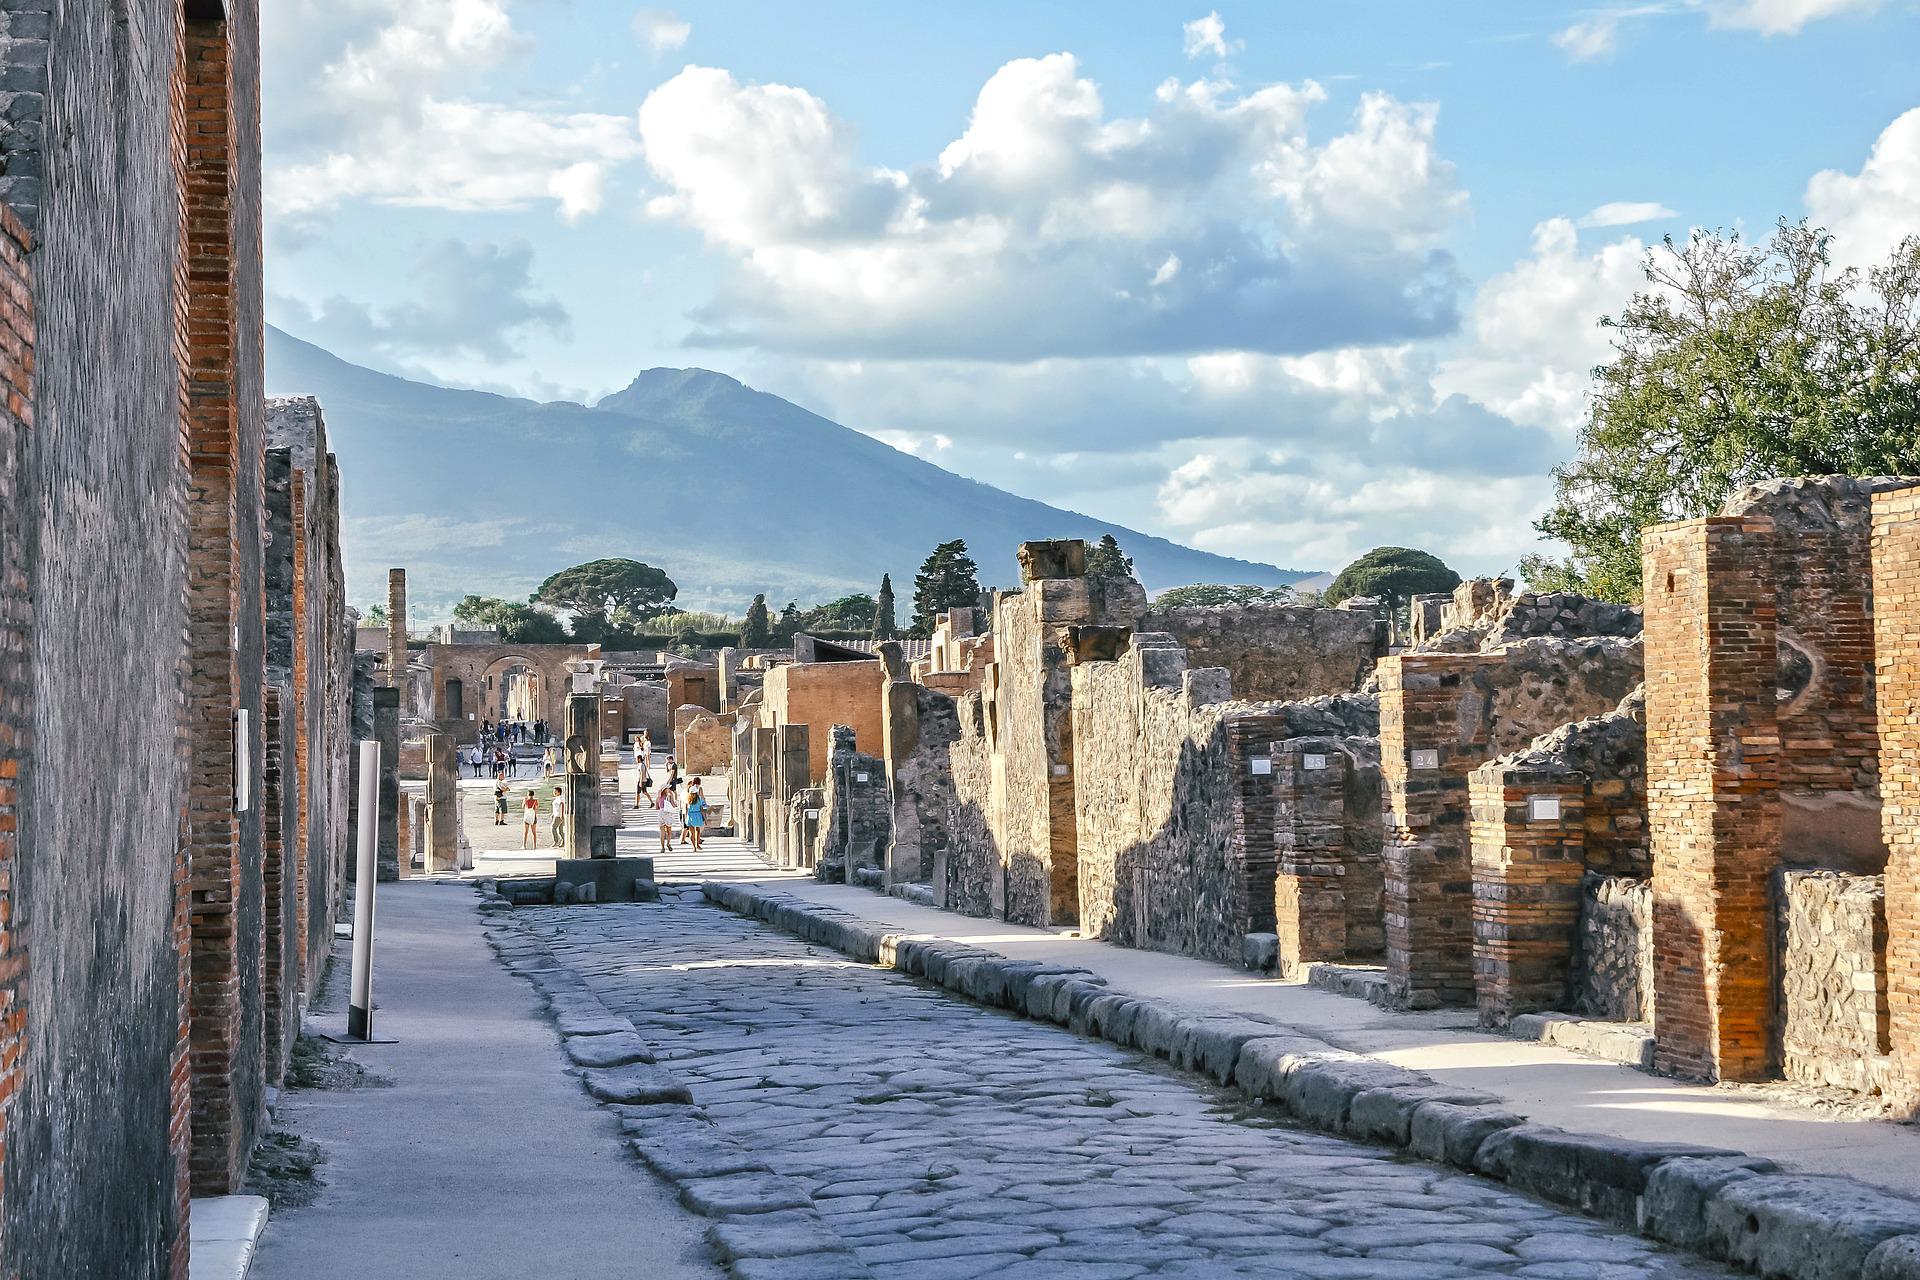 Vols Paris - Naples : le site archeologique de Pompei